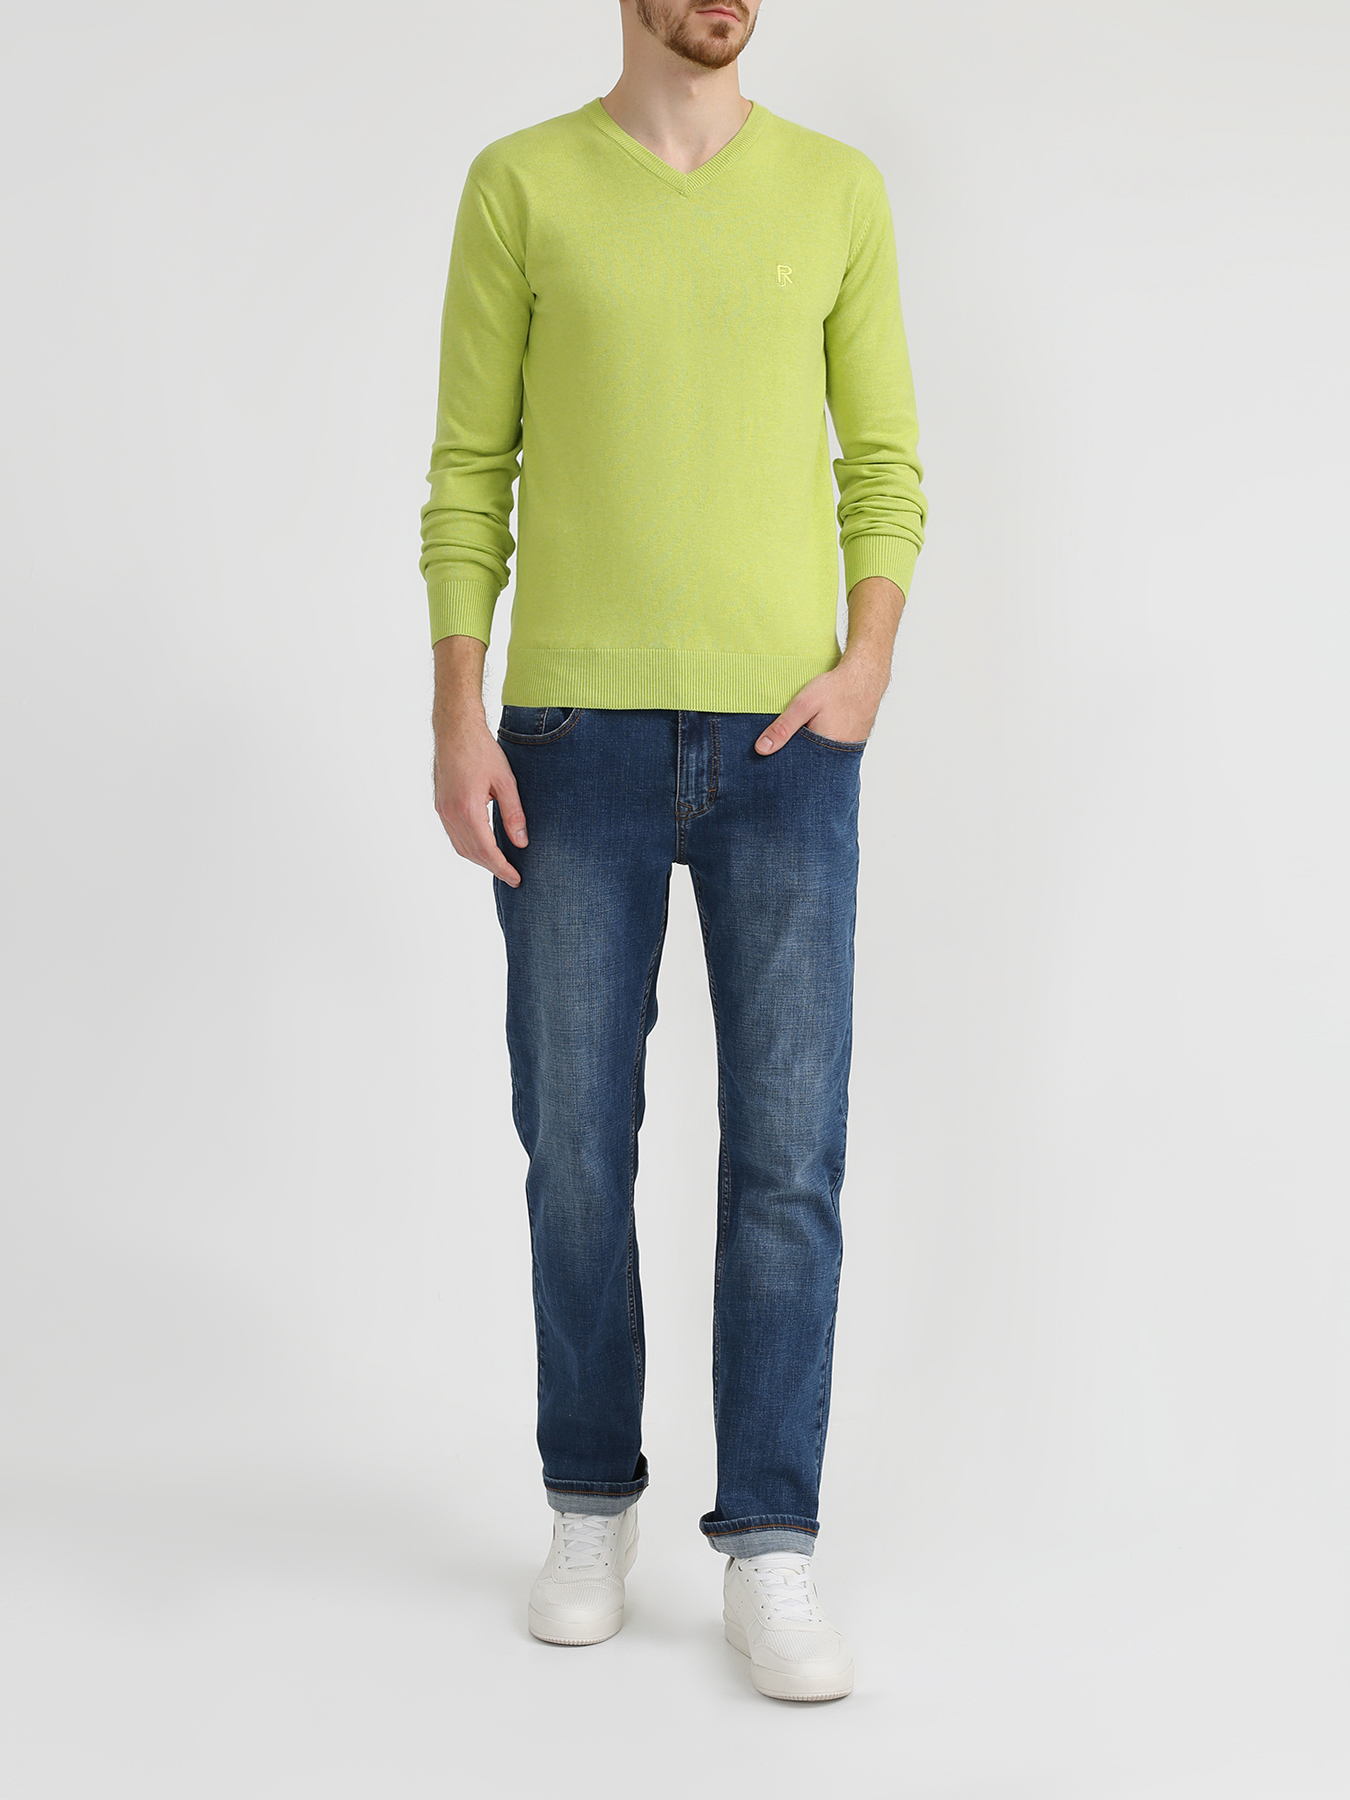 Ritter Jeans Хлопковый пуловер 318574-028